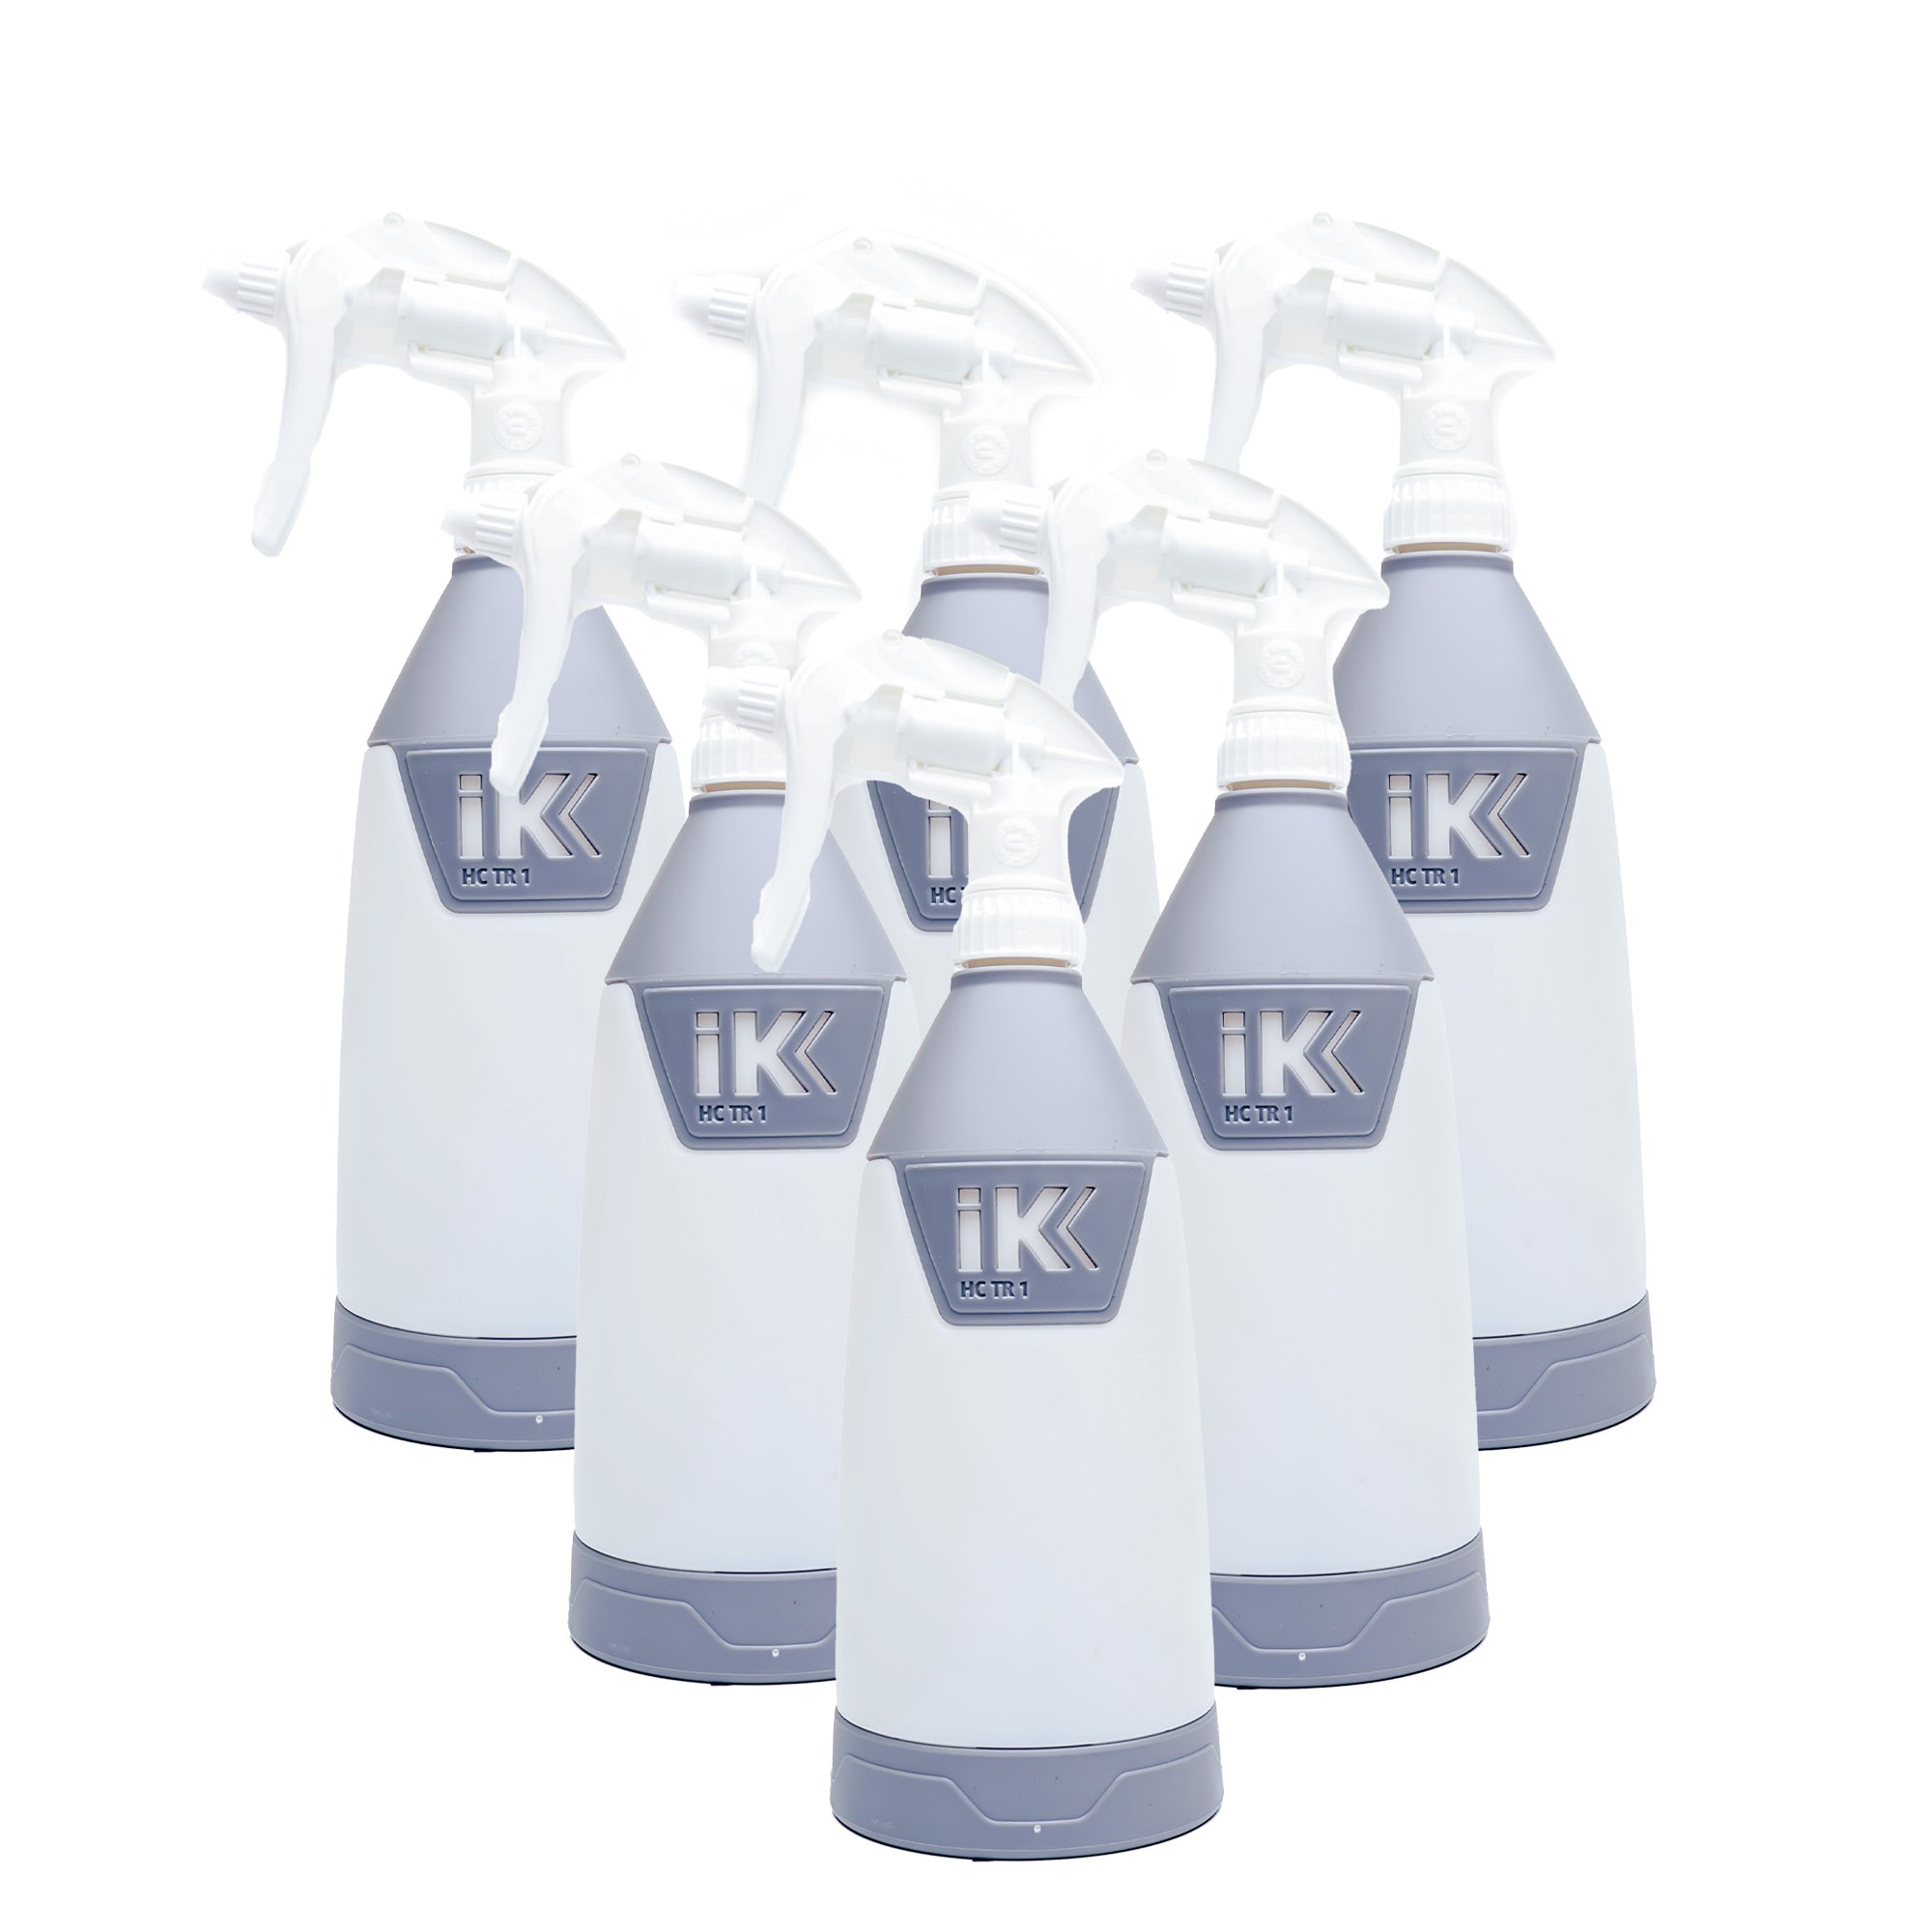 IK Spray Bottle